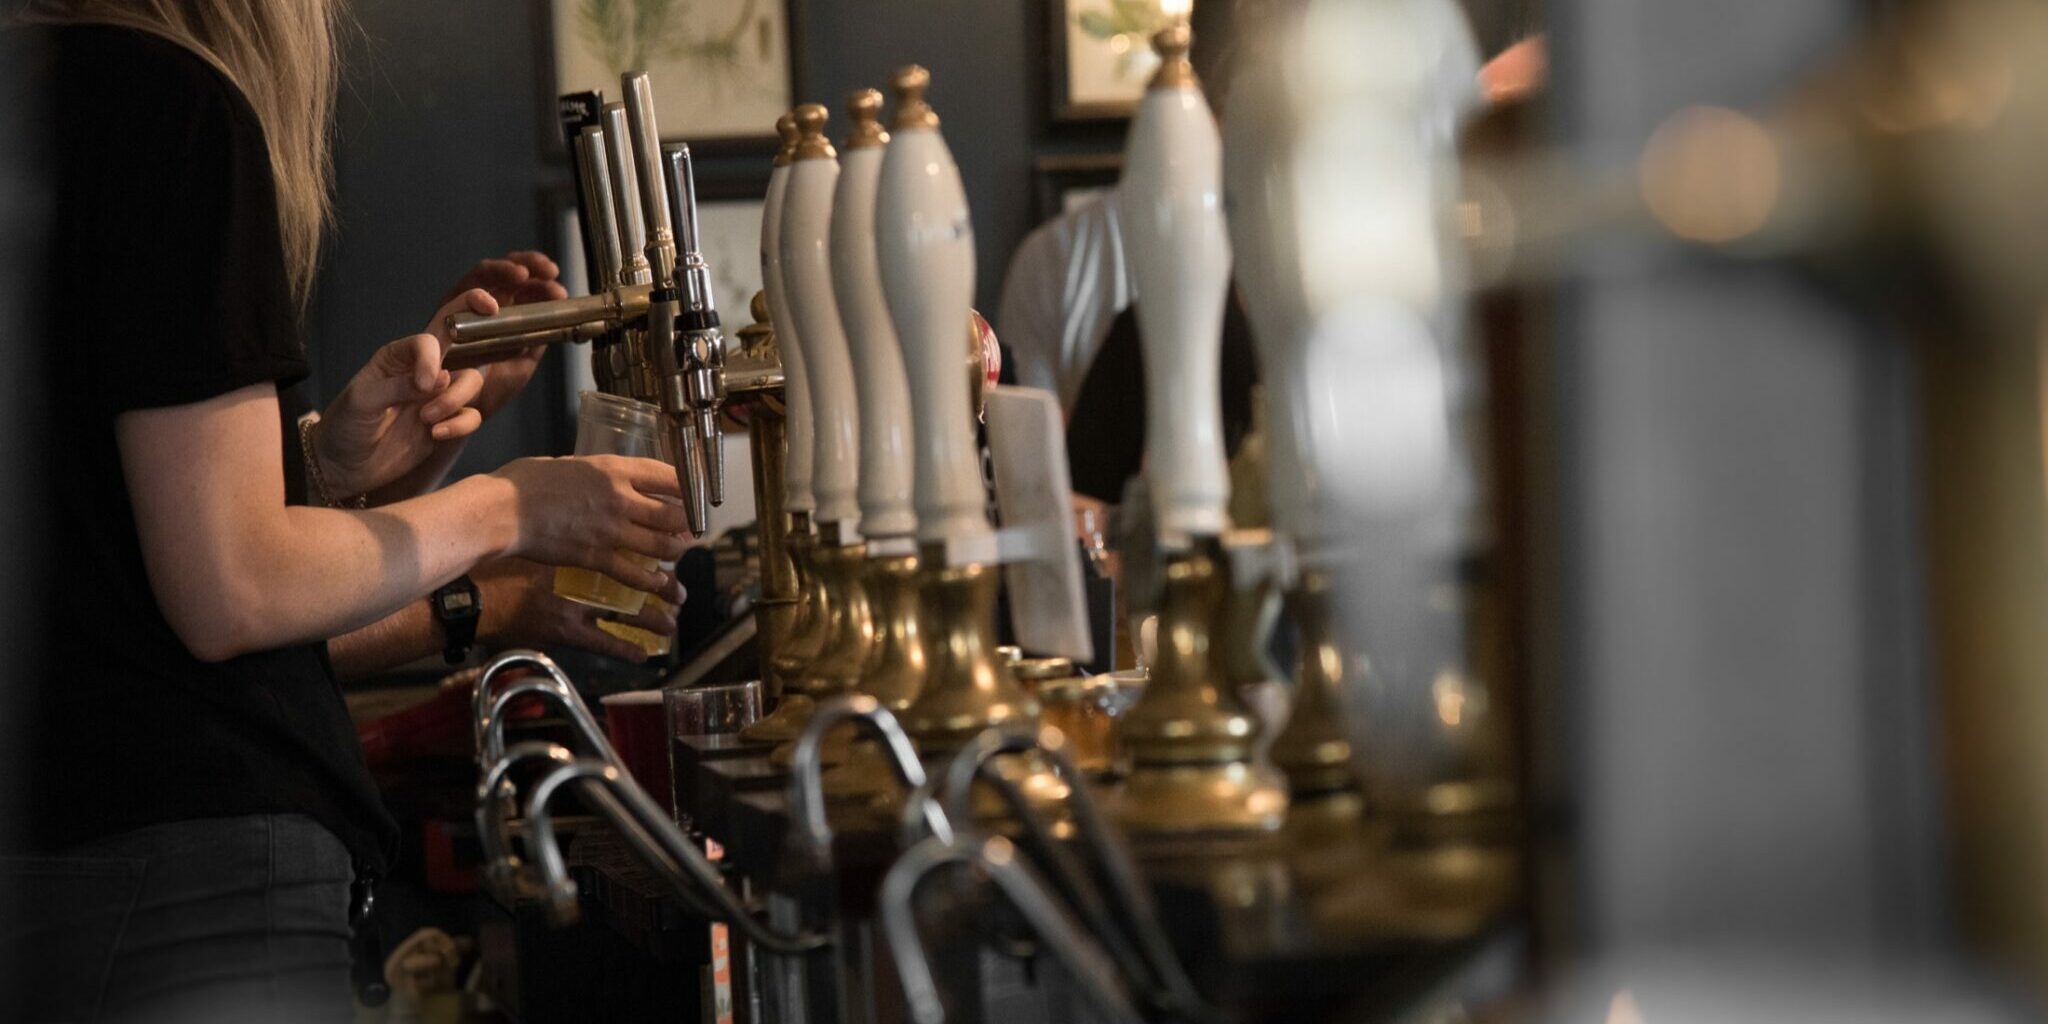 A row of beer taps at a bar